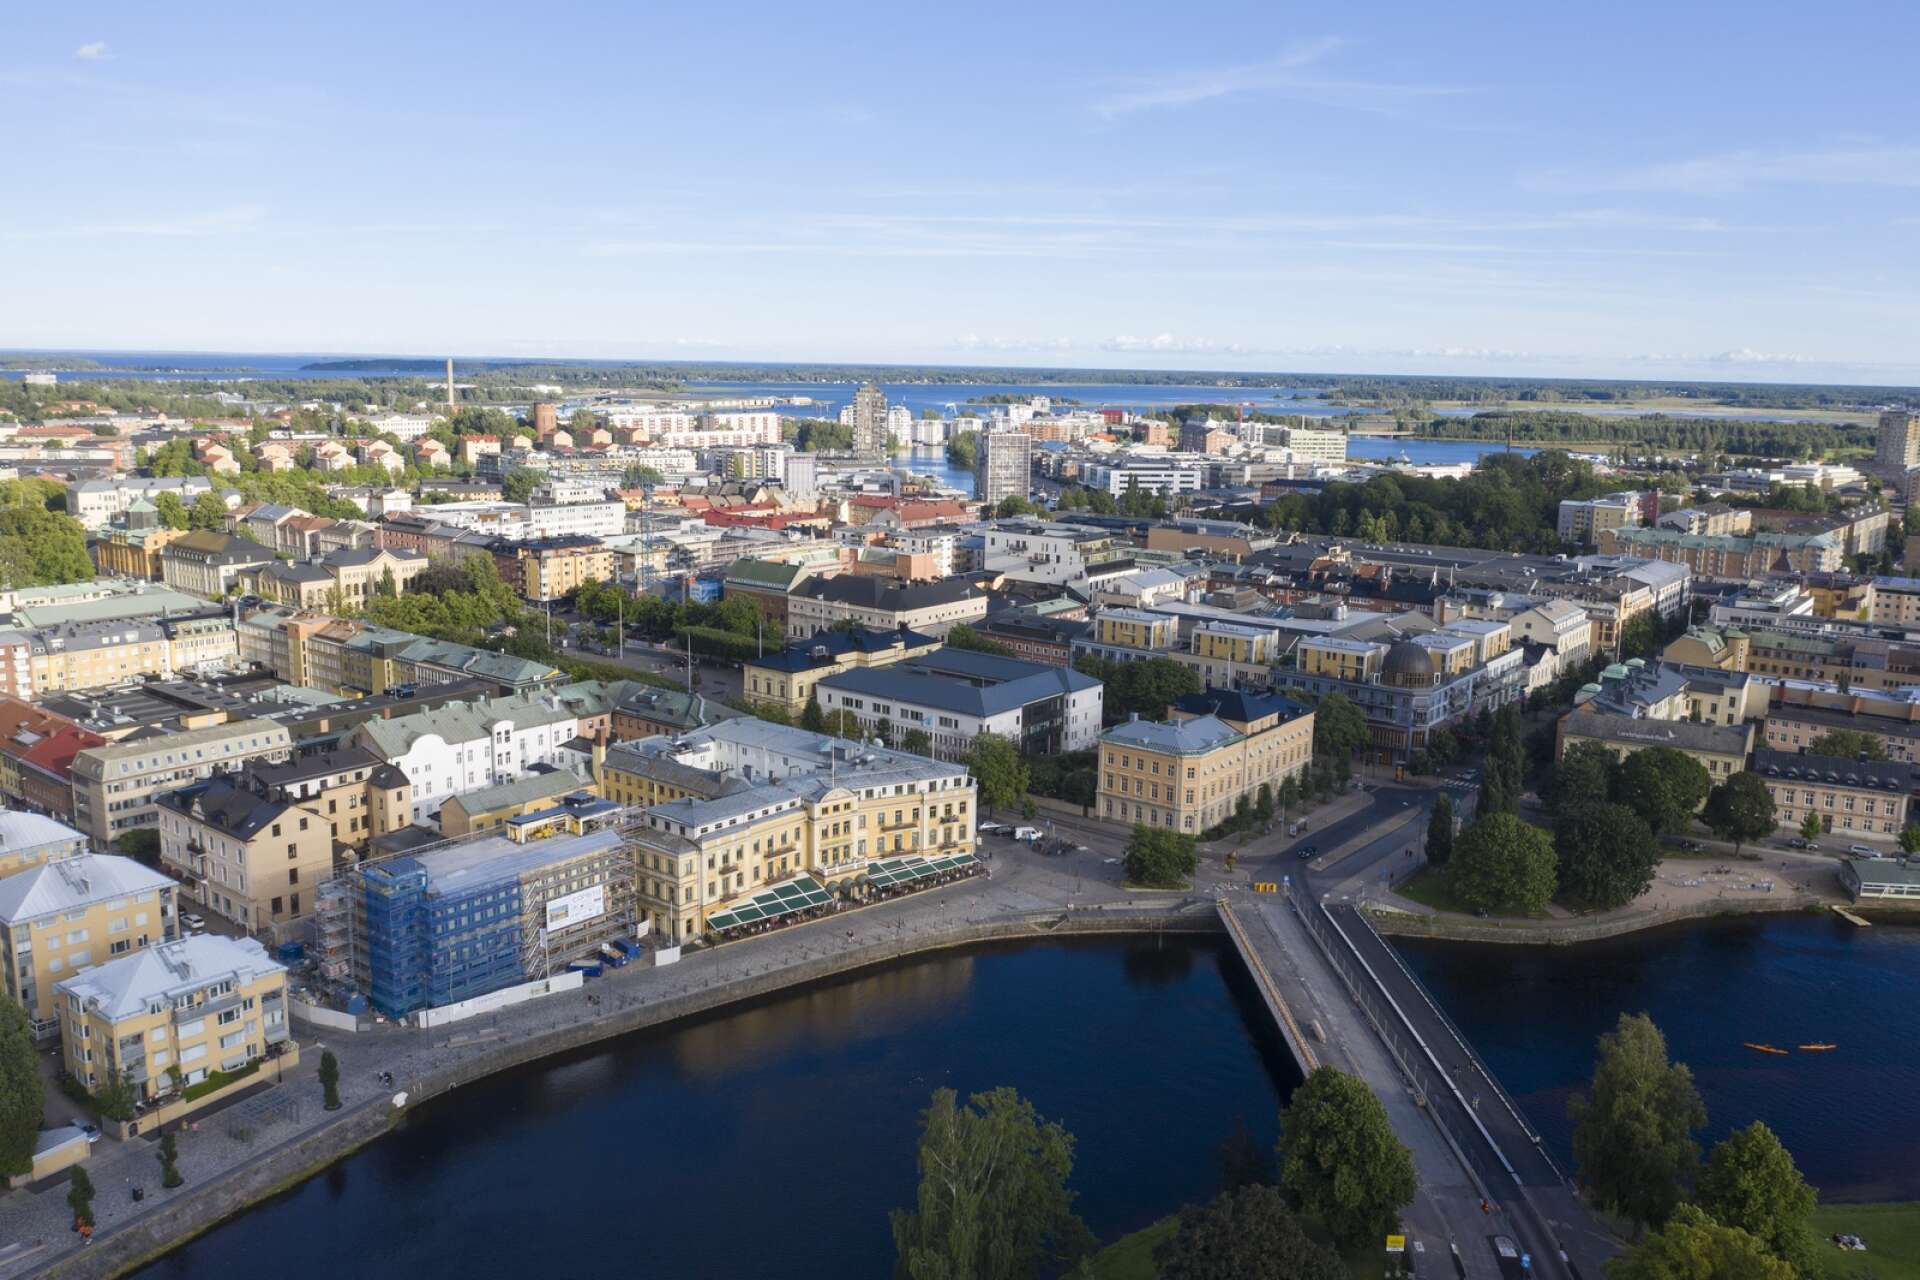 Miljöfrågor och mångfald bör prioriteras vid utvecklingen av Karlstads kommun, anser diskussionsgruppen Dispyterna.